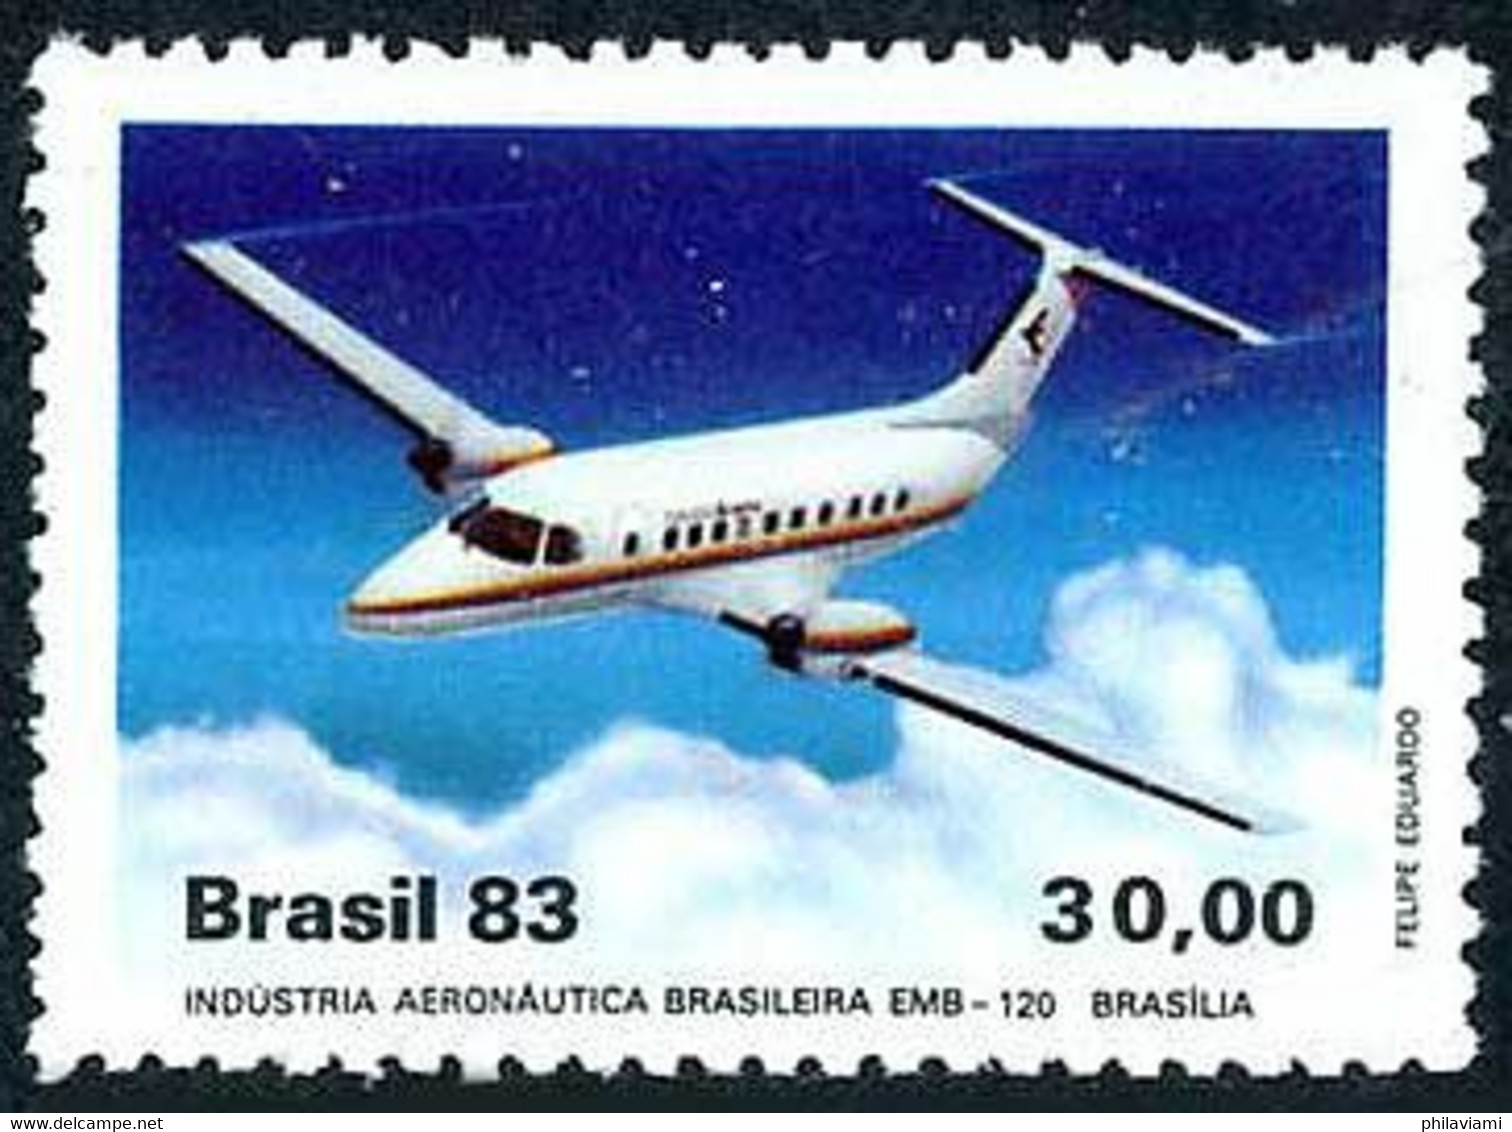 Brésil Brazil Brasilien Brasil 1983 Embraer Brasilia (Yvert 1618, Michel 1992, St Gibbons 2035) - Flugzeuge